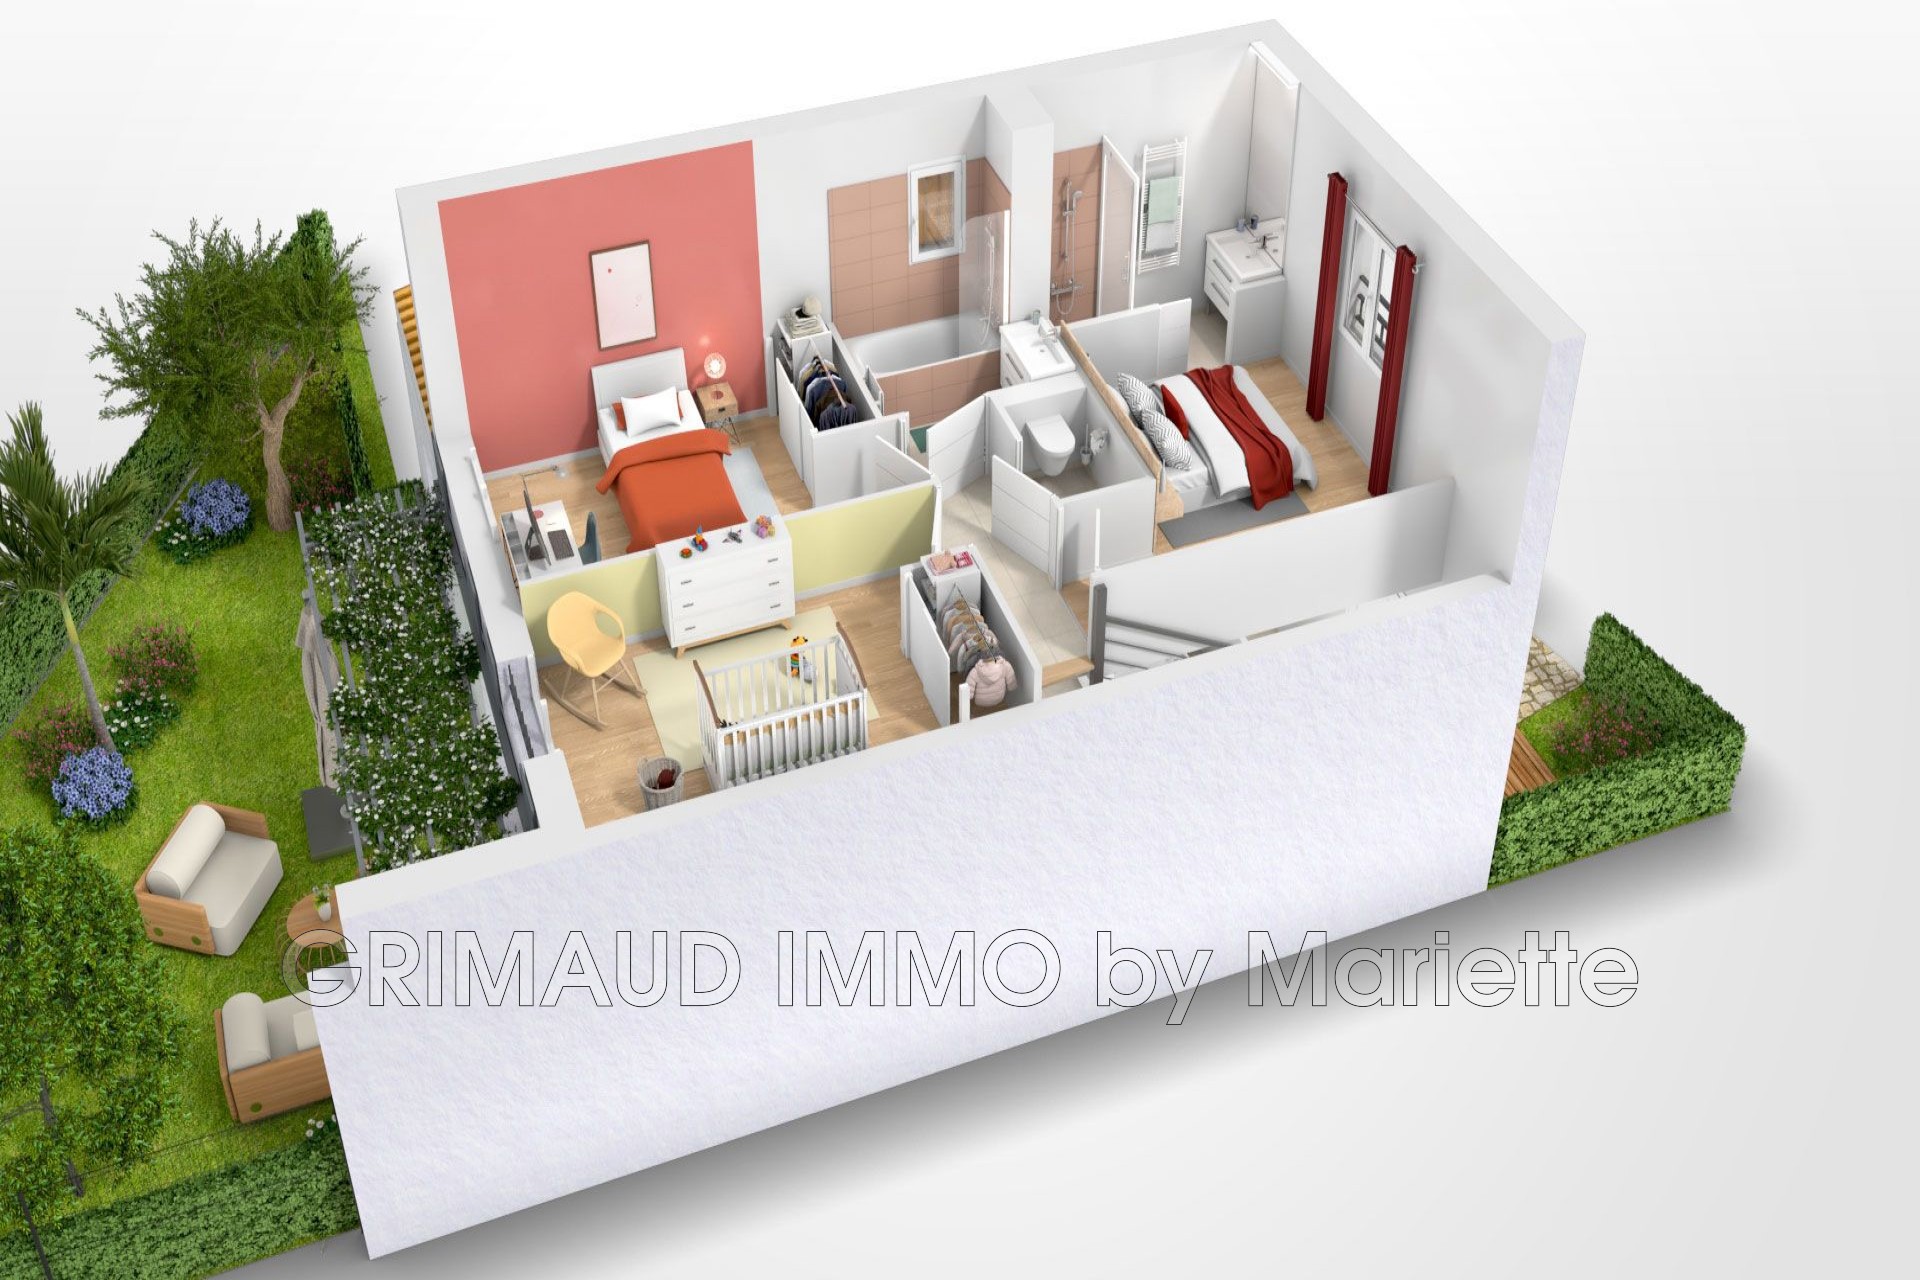 Vente Maison 98m² à Sainte-Maxime (83120) - Grimaud Immo